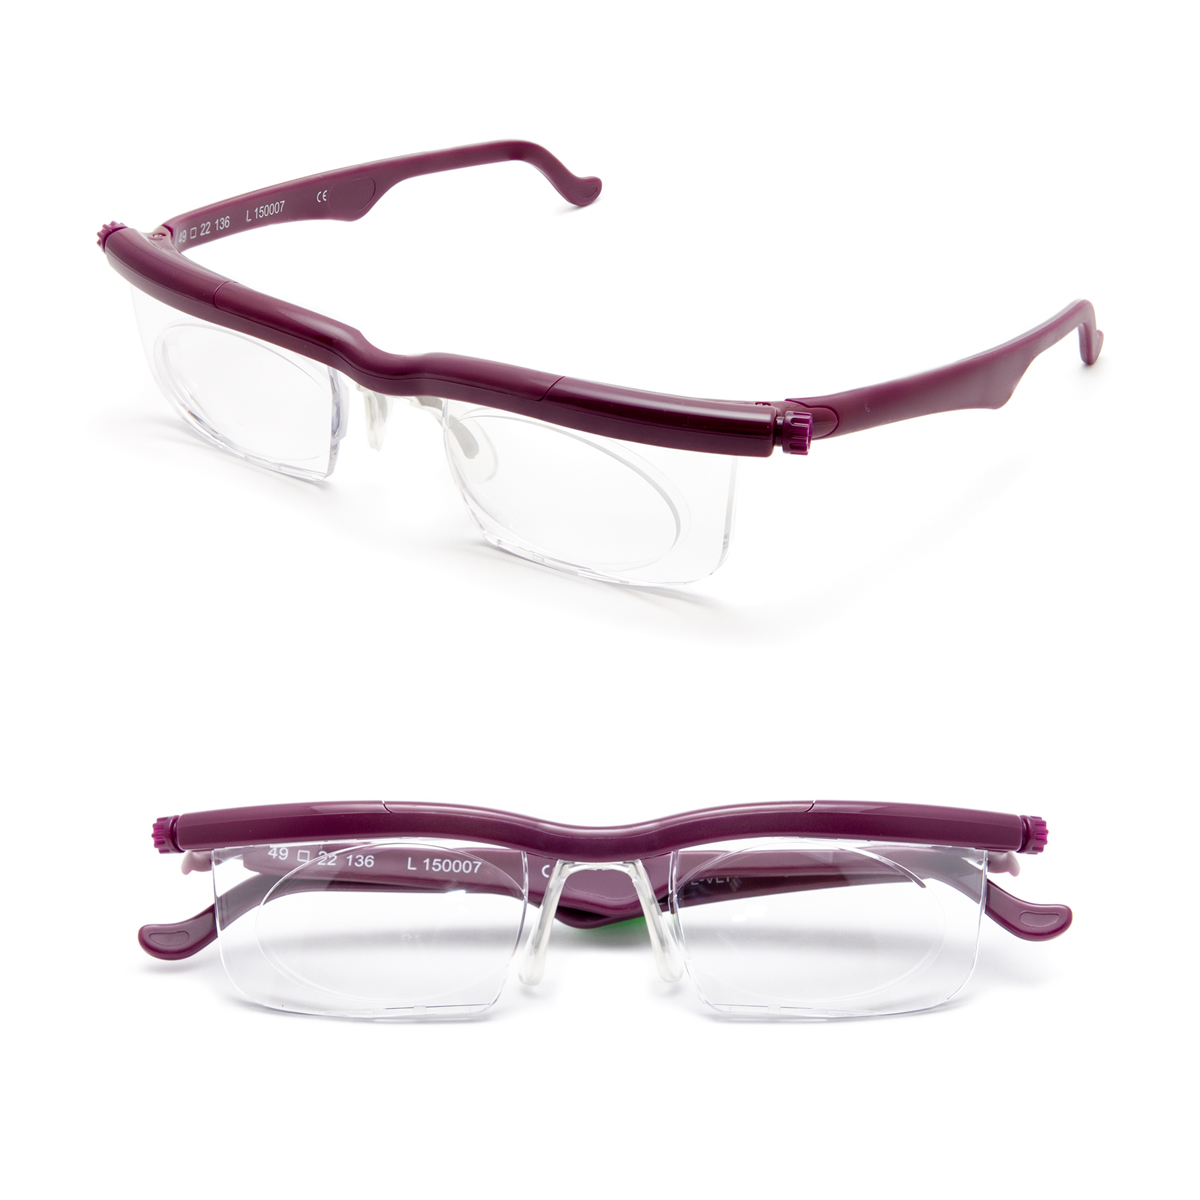 アドレンズ ライフワン～生涯使える老眼鏡を目指して開発された、自分 